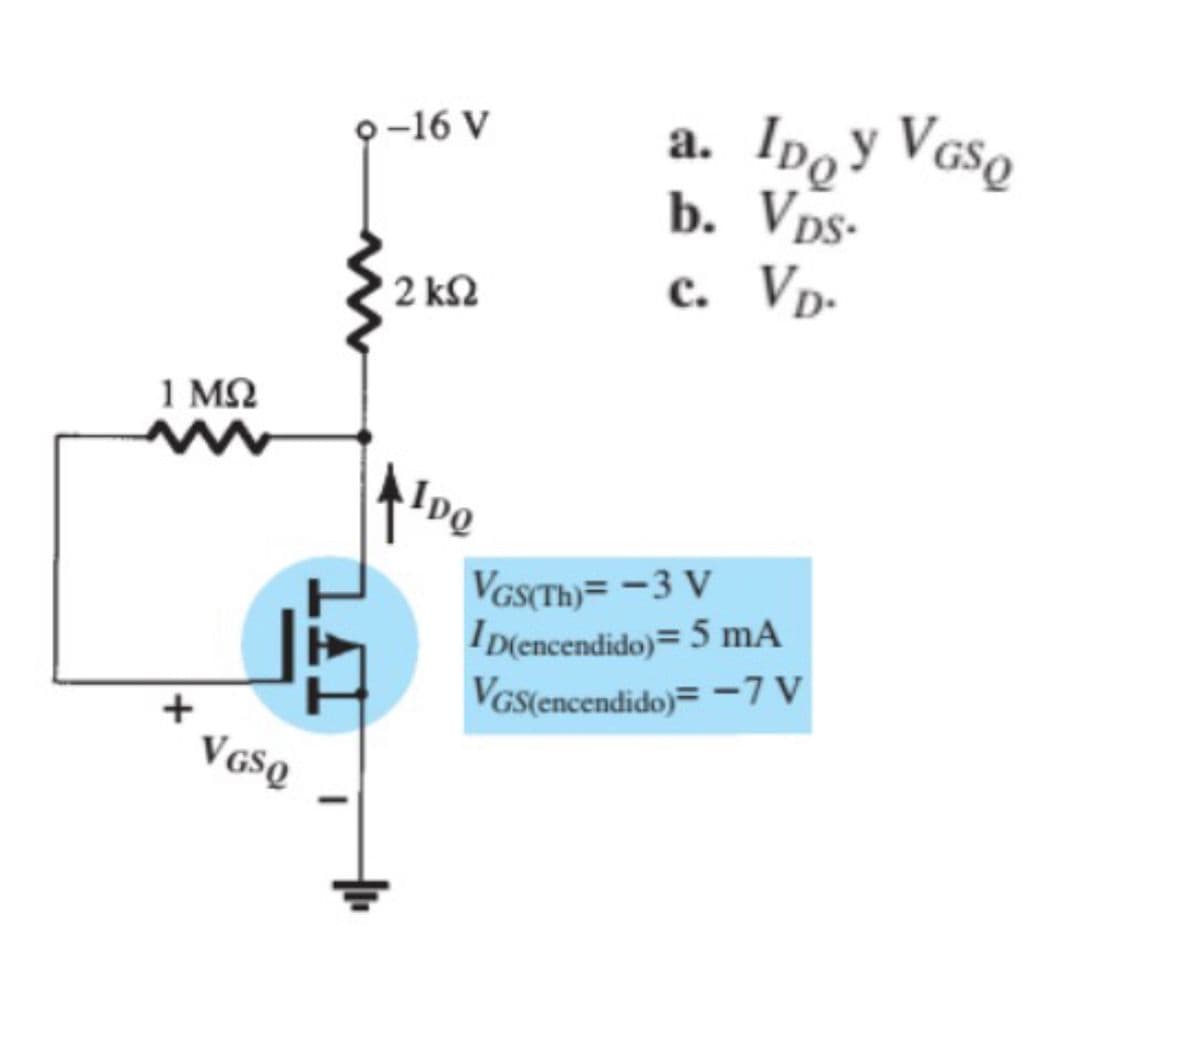 a. Ipoy VGso
b. Vps-
c. Vp-
9-16 V
а.
2 kN
1 M2
VGSCTH)= -3 V
D(encendido)= 5 mA
Vas(encendido)= -7 V
V GSQ
